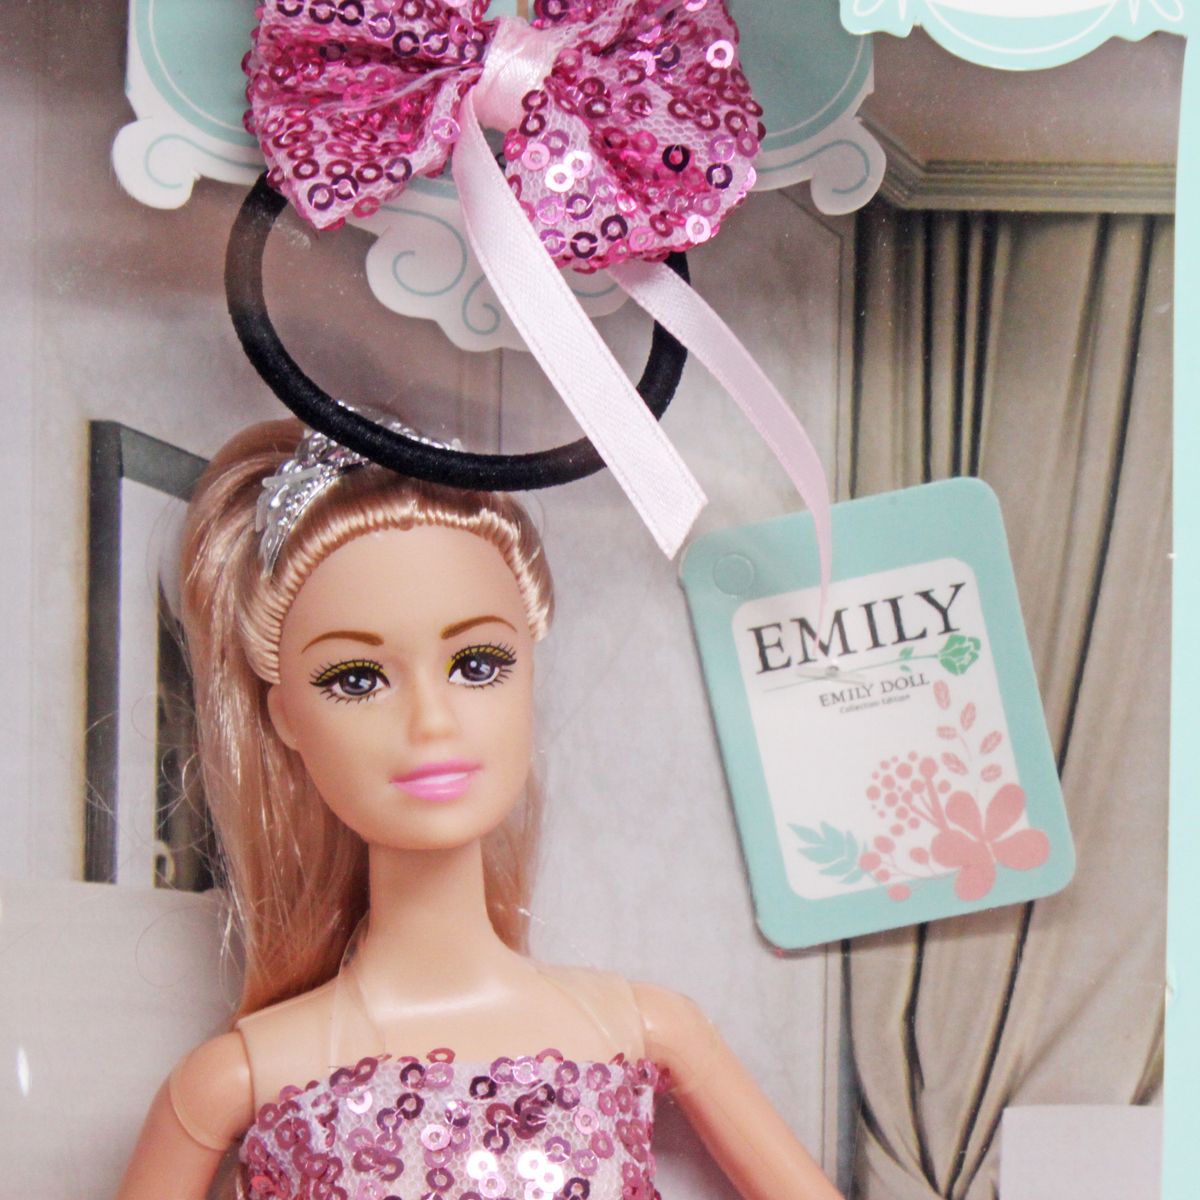 Лялька "Emily" з вбранням для дитини